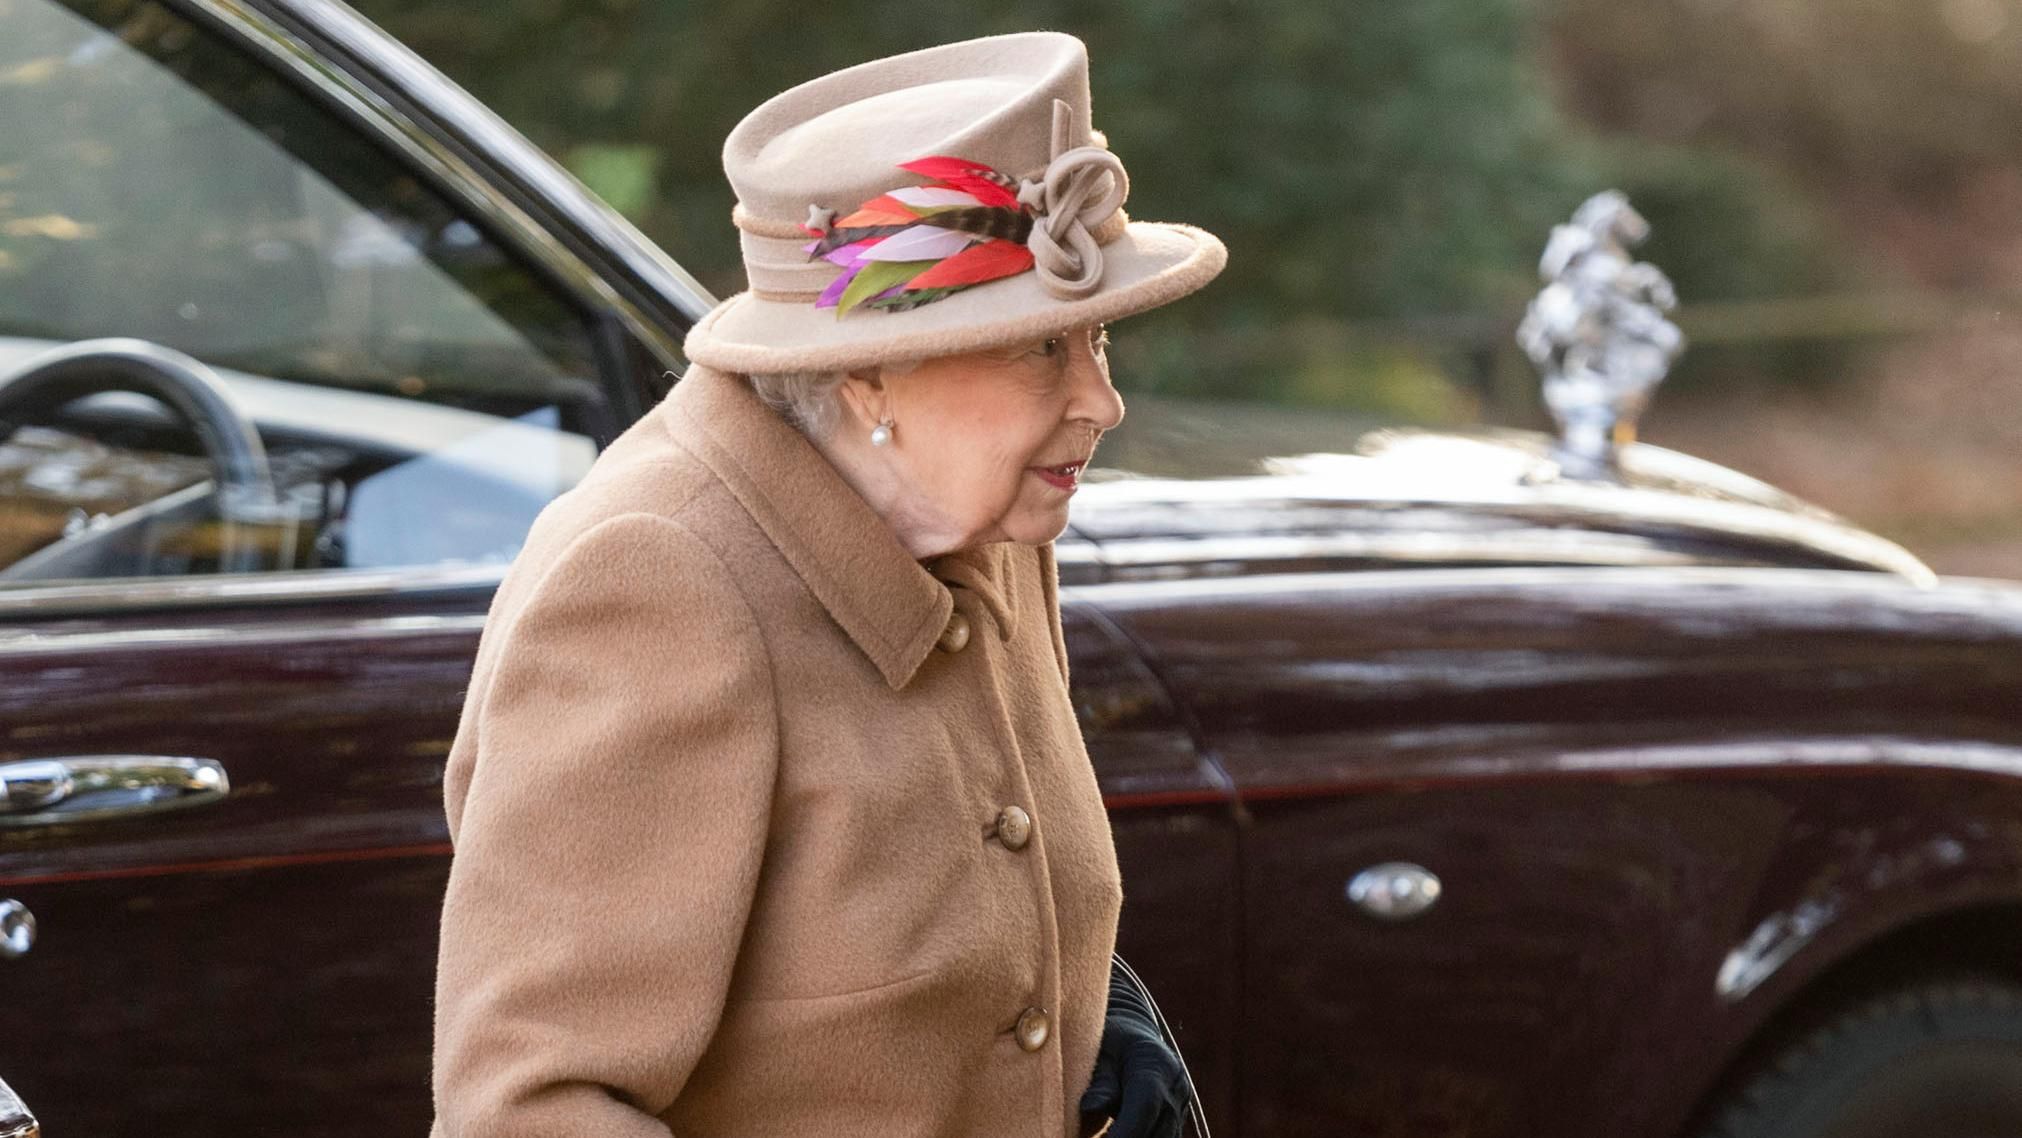 Єлизавету II побачили за кермом після тривожних новин щодо її здоров'я: фото - Showbiz